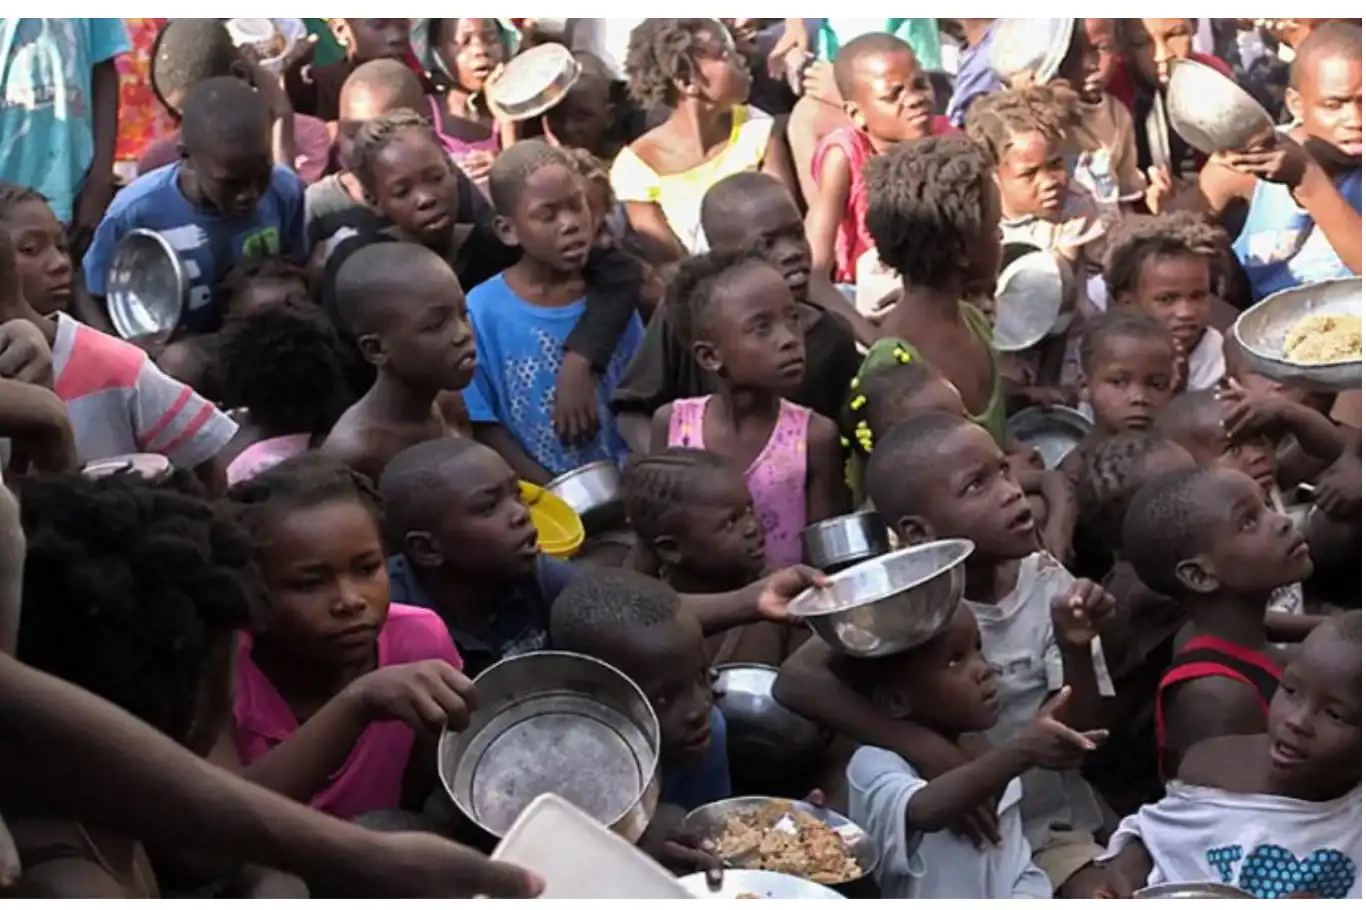 Starving help. Африканские дети Голодные. Гаити население.